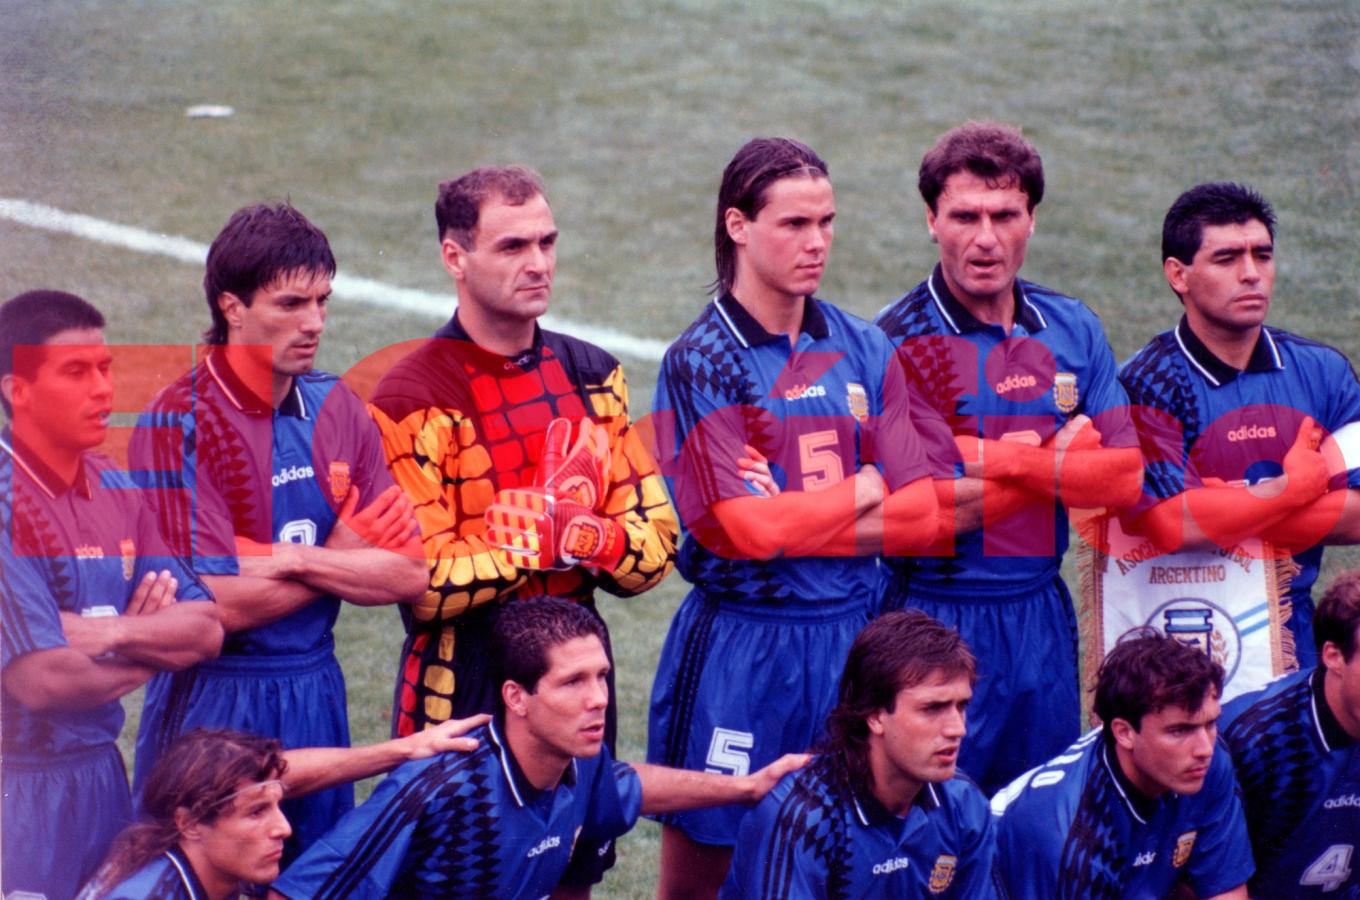 Imagen El debut de Argentina en el Mundial 1994: Una goleada 4-0 contra Grecia y a soñar en grande